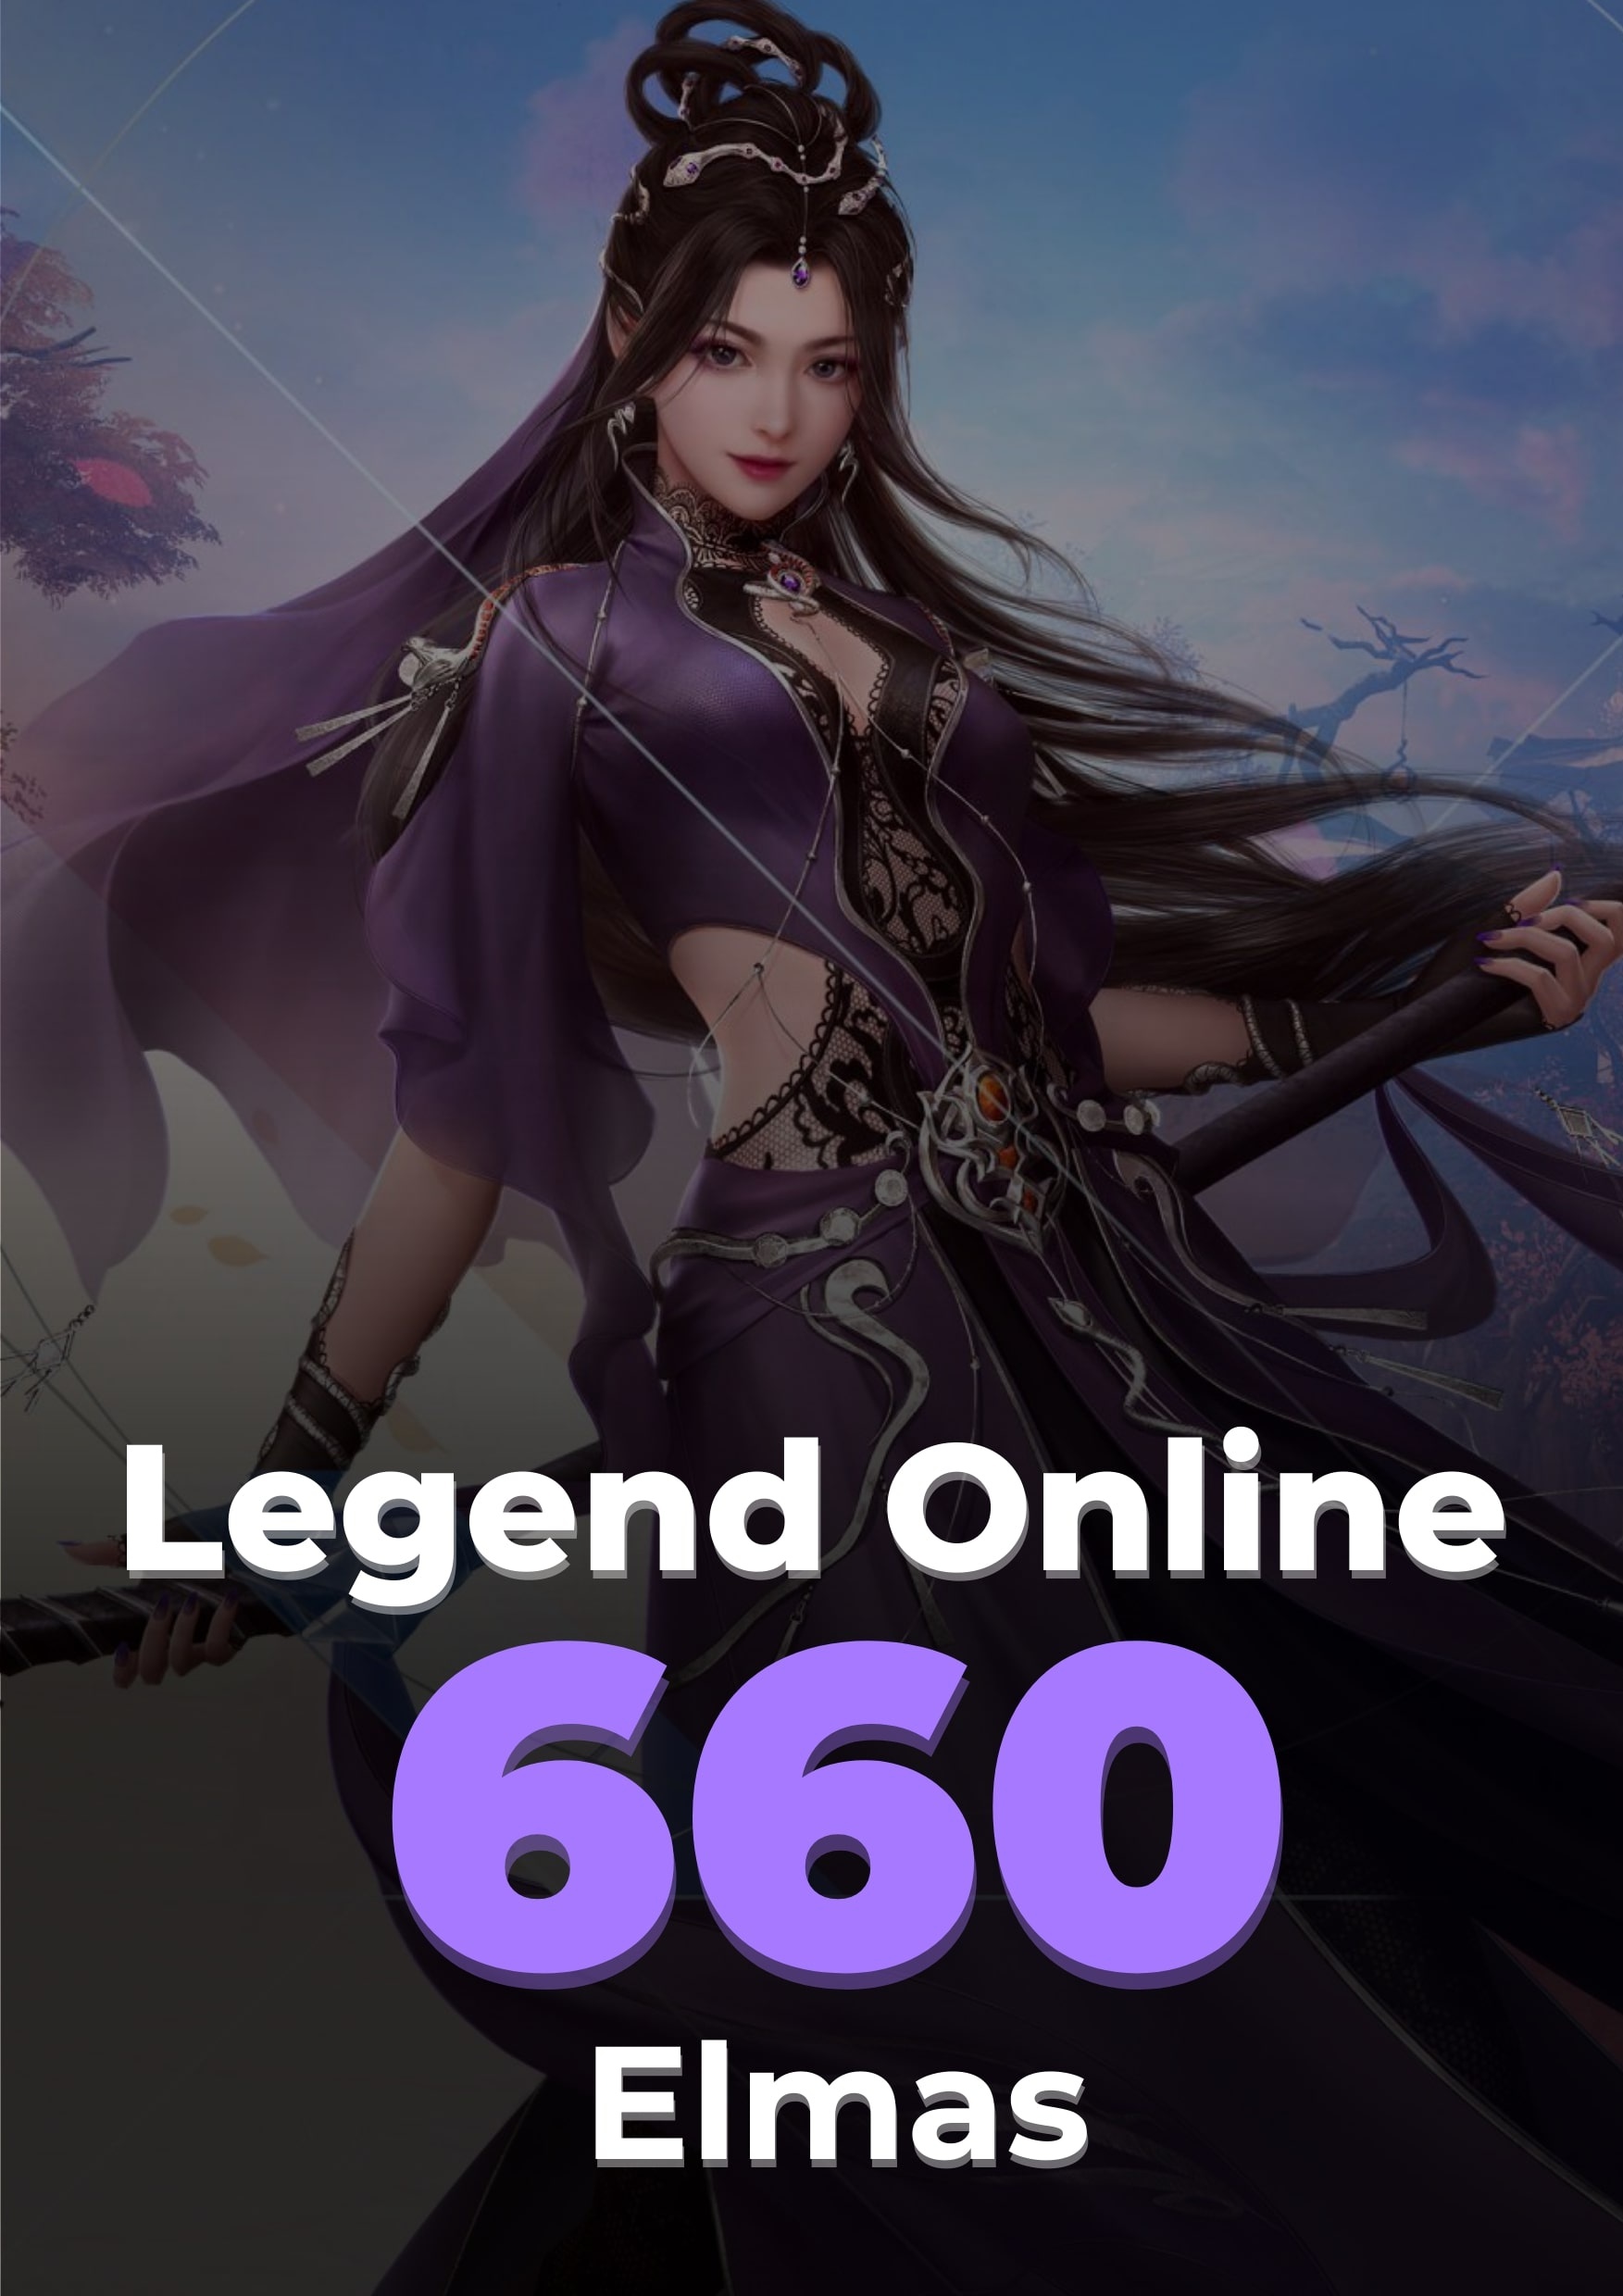 Legend Online 600 + 60 Elmas